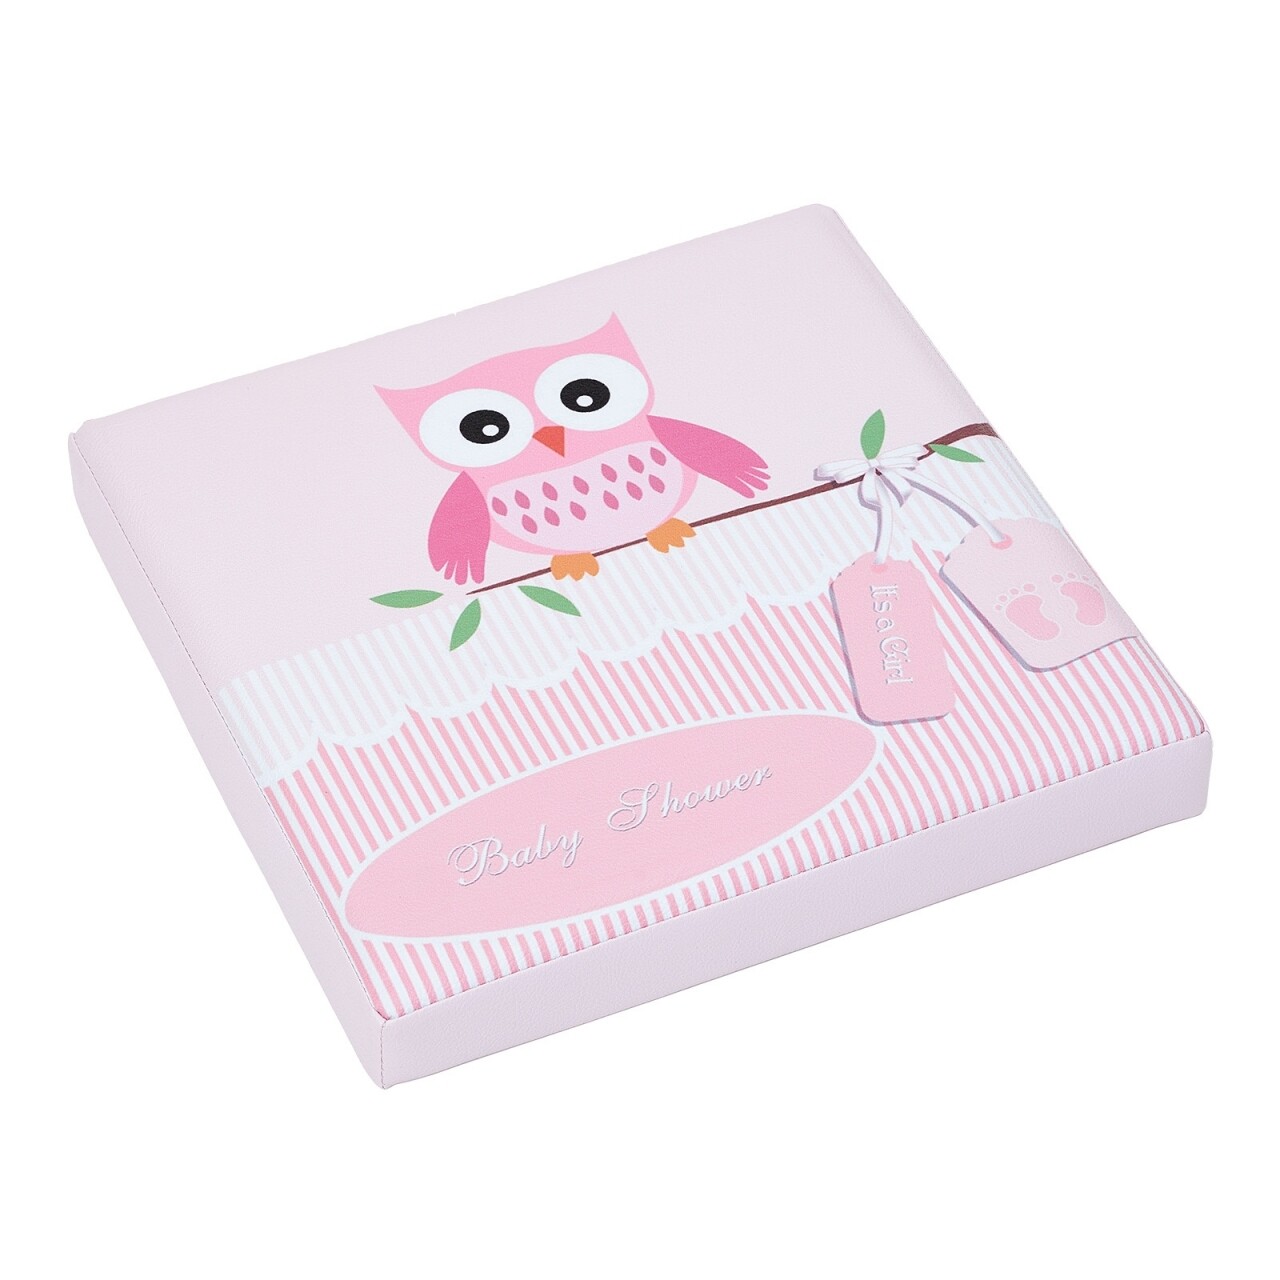 Pink Owl Összecsukható Zsámoly Tárolóhellyel, Heinner Home, 37.5 X 38 X 38 Cm, PVC, Színes